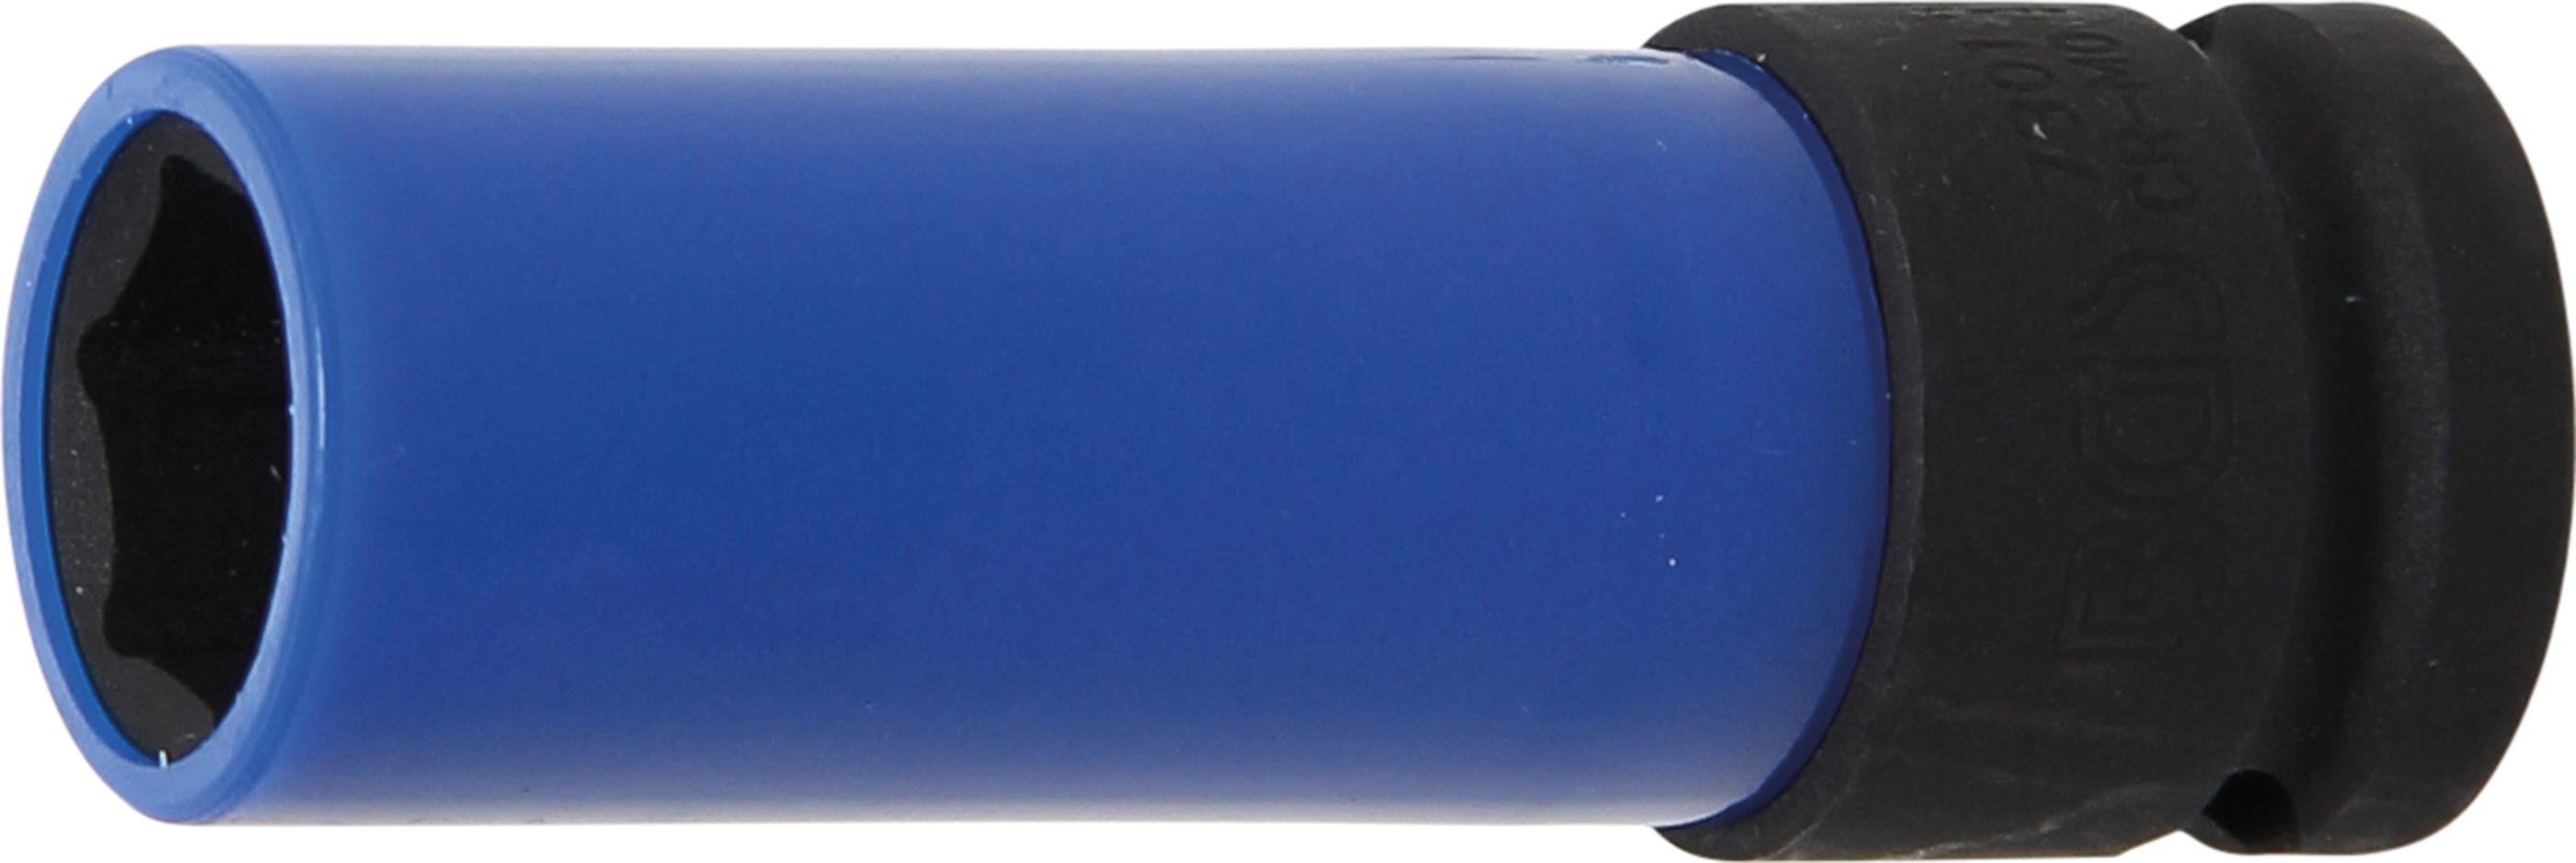 BGS 7301 Tubulara de impact 17mm cu protectie pentru jante din aliaj, actionare 1/2"